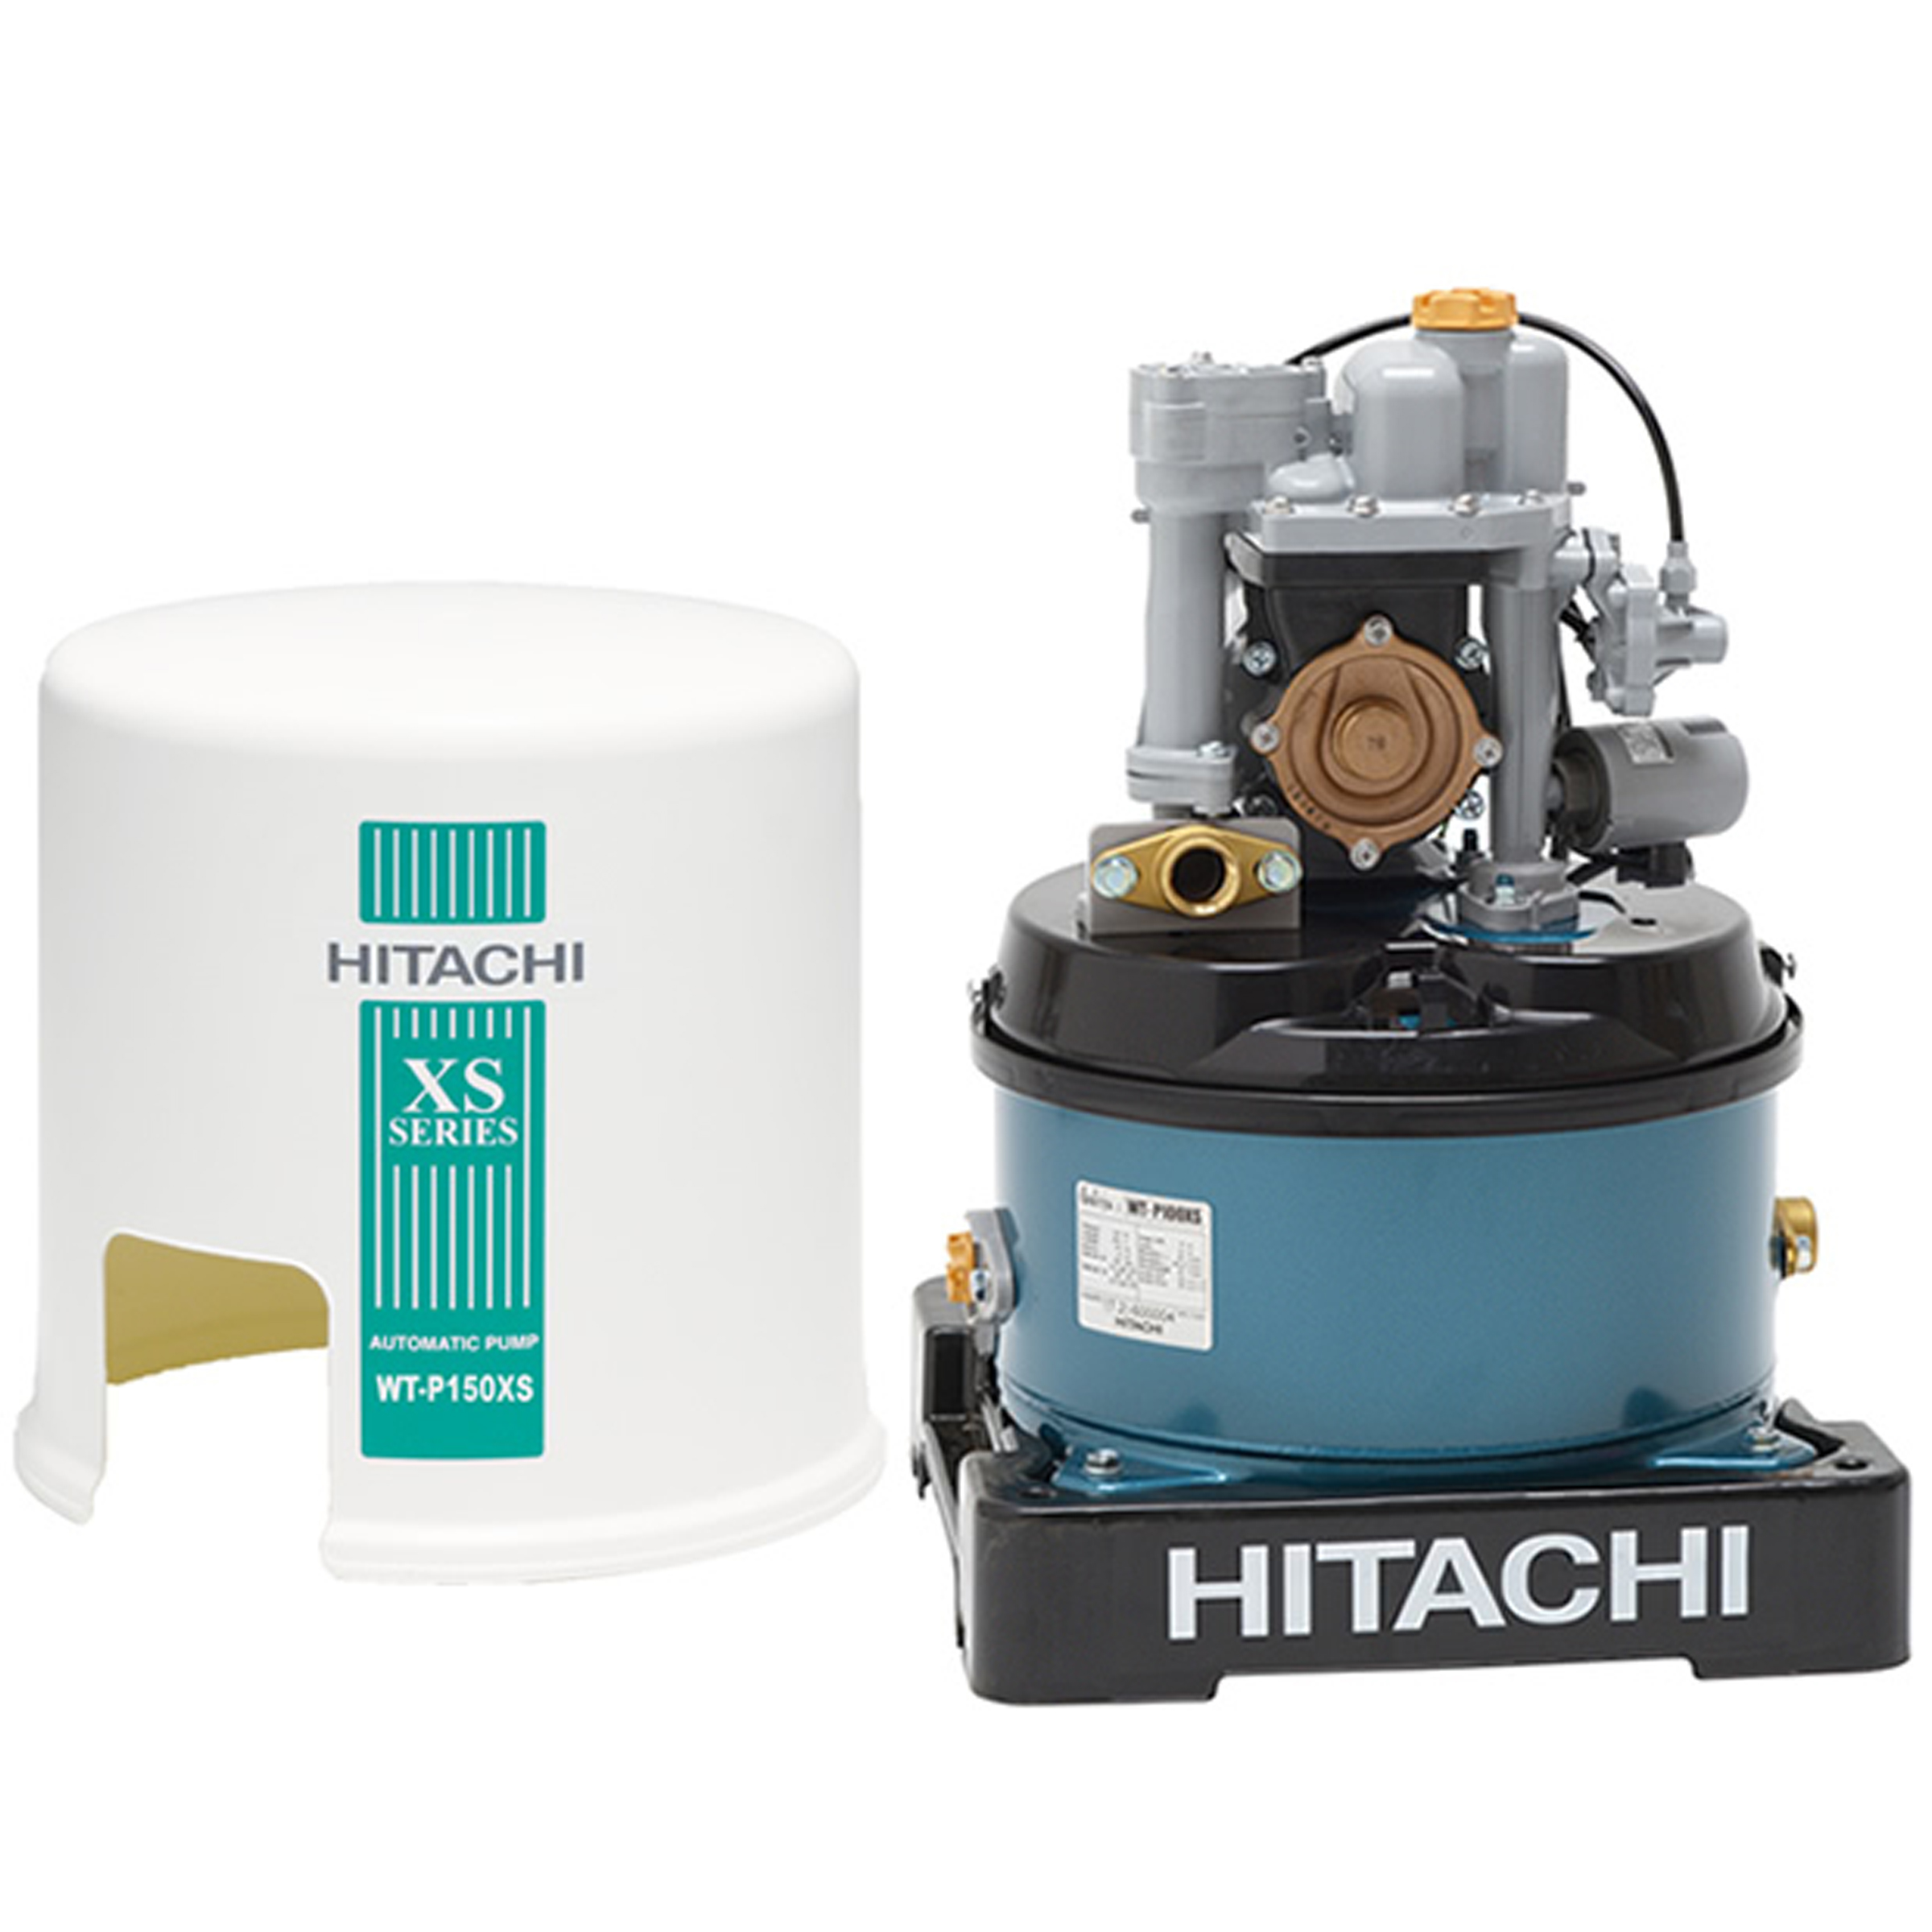 HITACHI Automatic Pump 150W, 34L/min, WT-P150XS